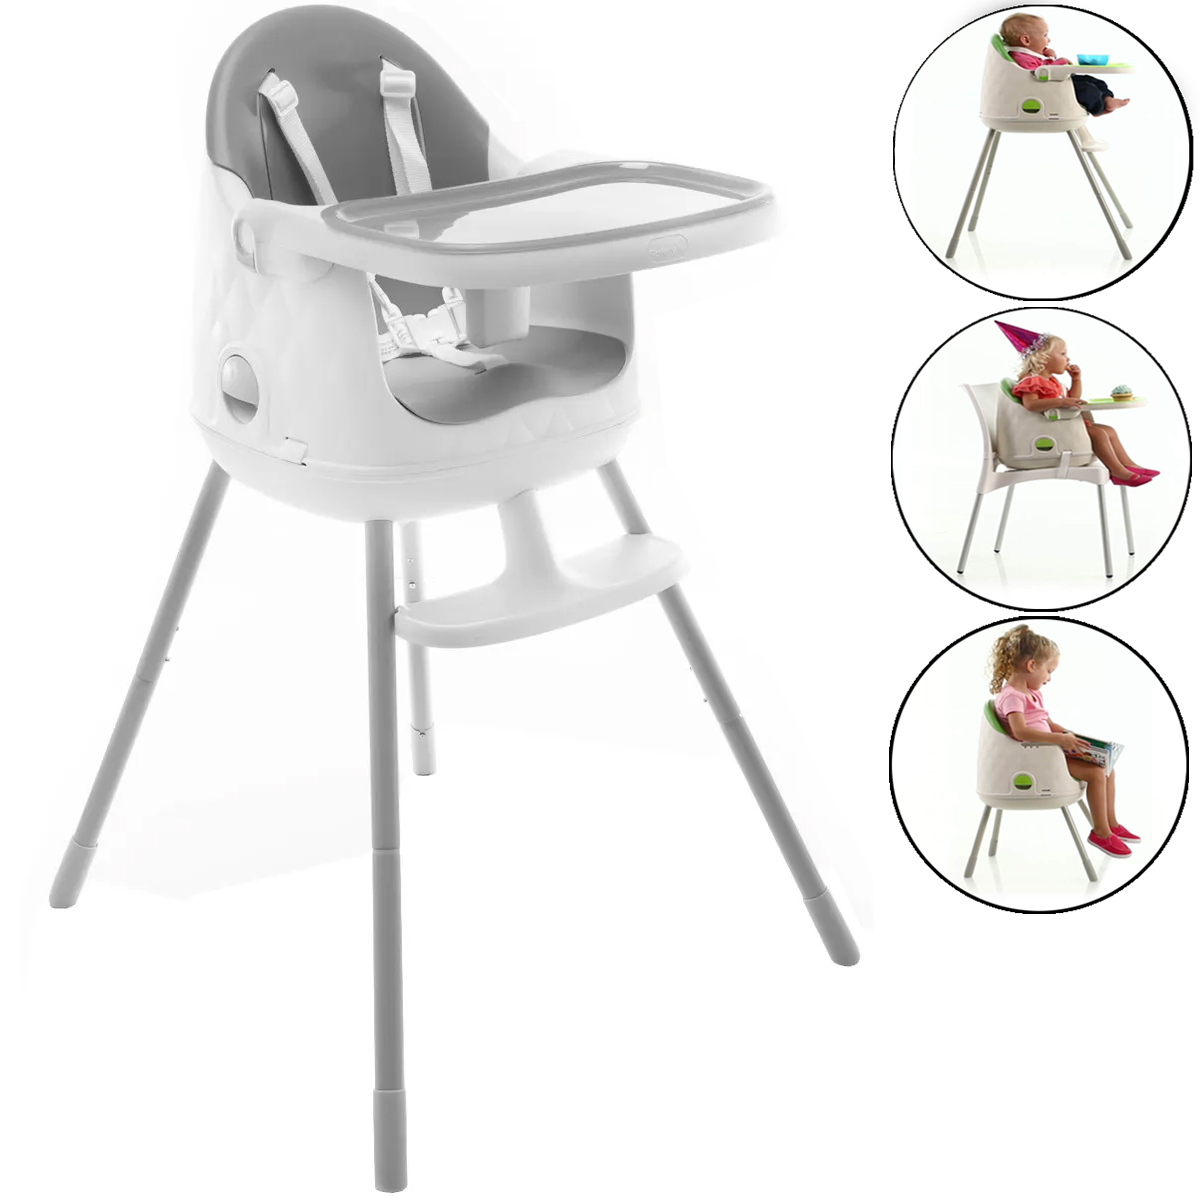 Cadeira de Refeição Infantil Jelly 3em1 Desmontável Portátil Alimentação Criança Bebê De 6 Meses a 25kg Grey - Safety 1st